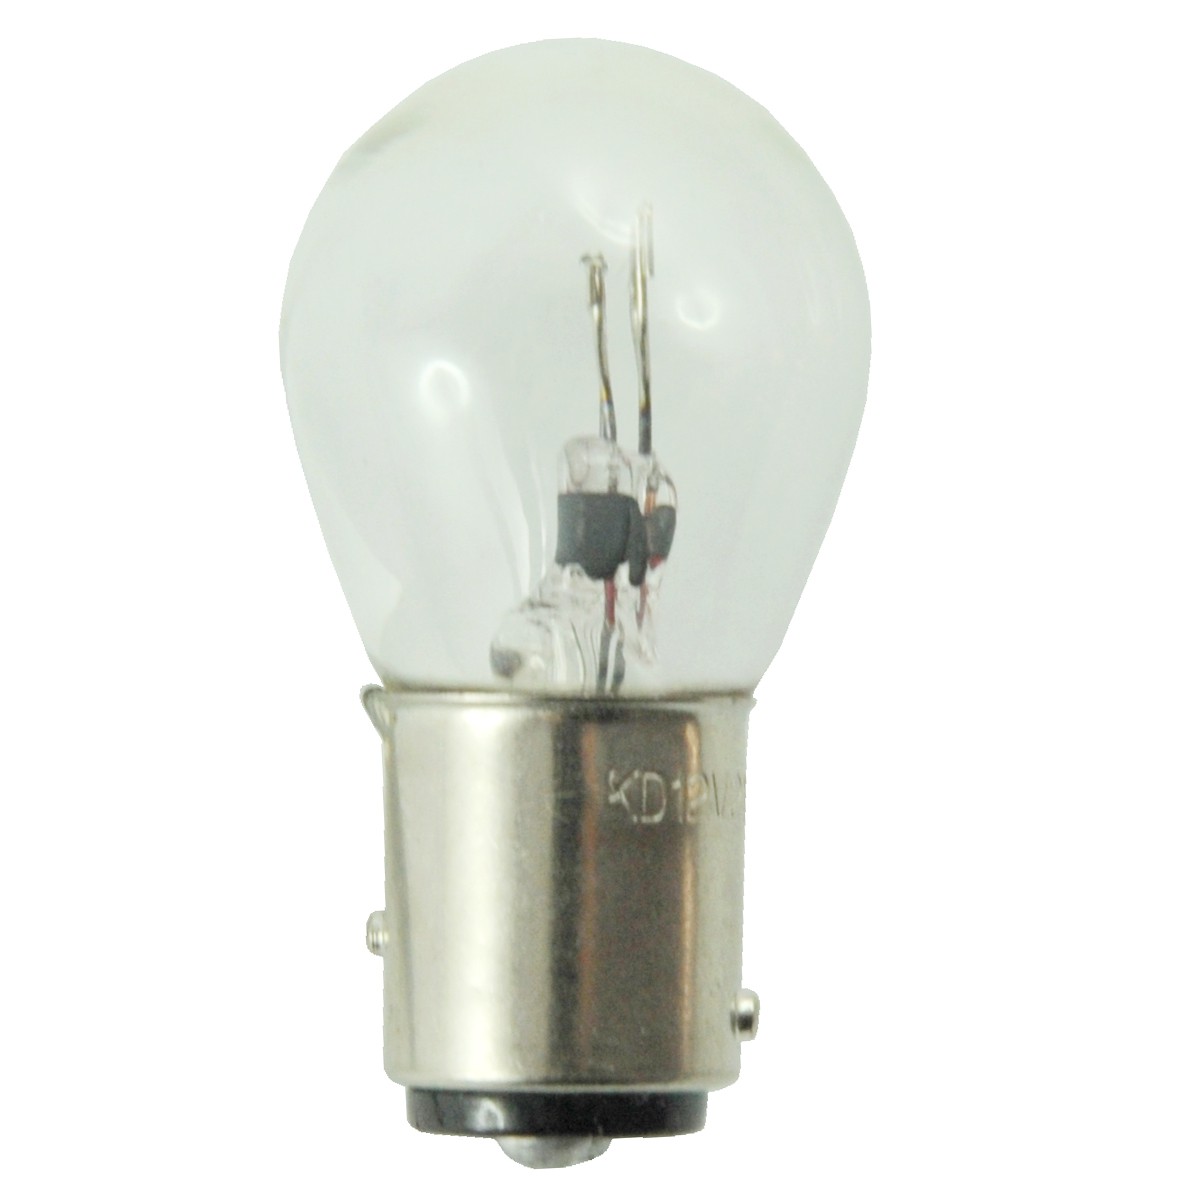 Light bulb 12V / 21W / 5W / LS MT3.35 / LS MT3.40 / LS MT3.50 / LS MT3.60 / TRG760 / A1760016 / A1760041 / 40059364/40007202.